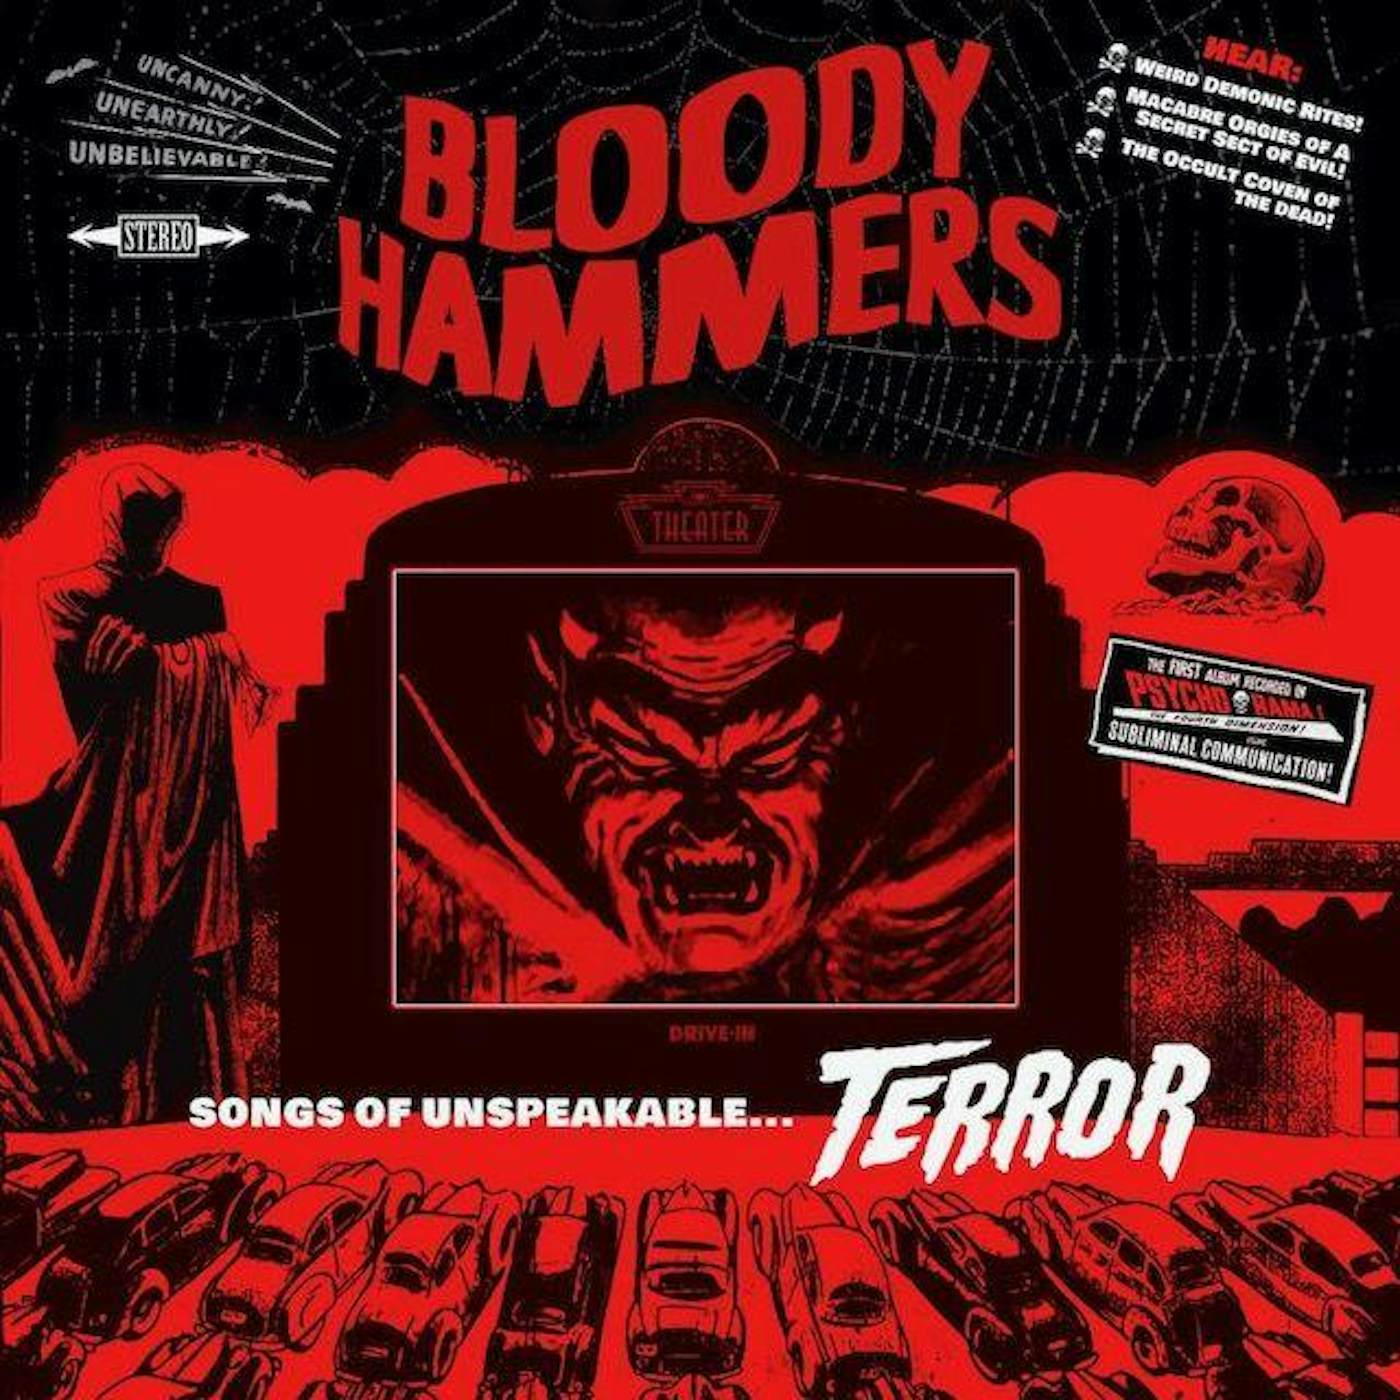 Bloody Hammers SONGS OF UNSPEAKABLE TERROR CD